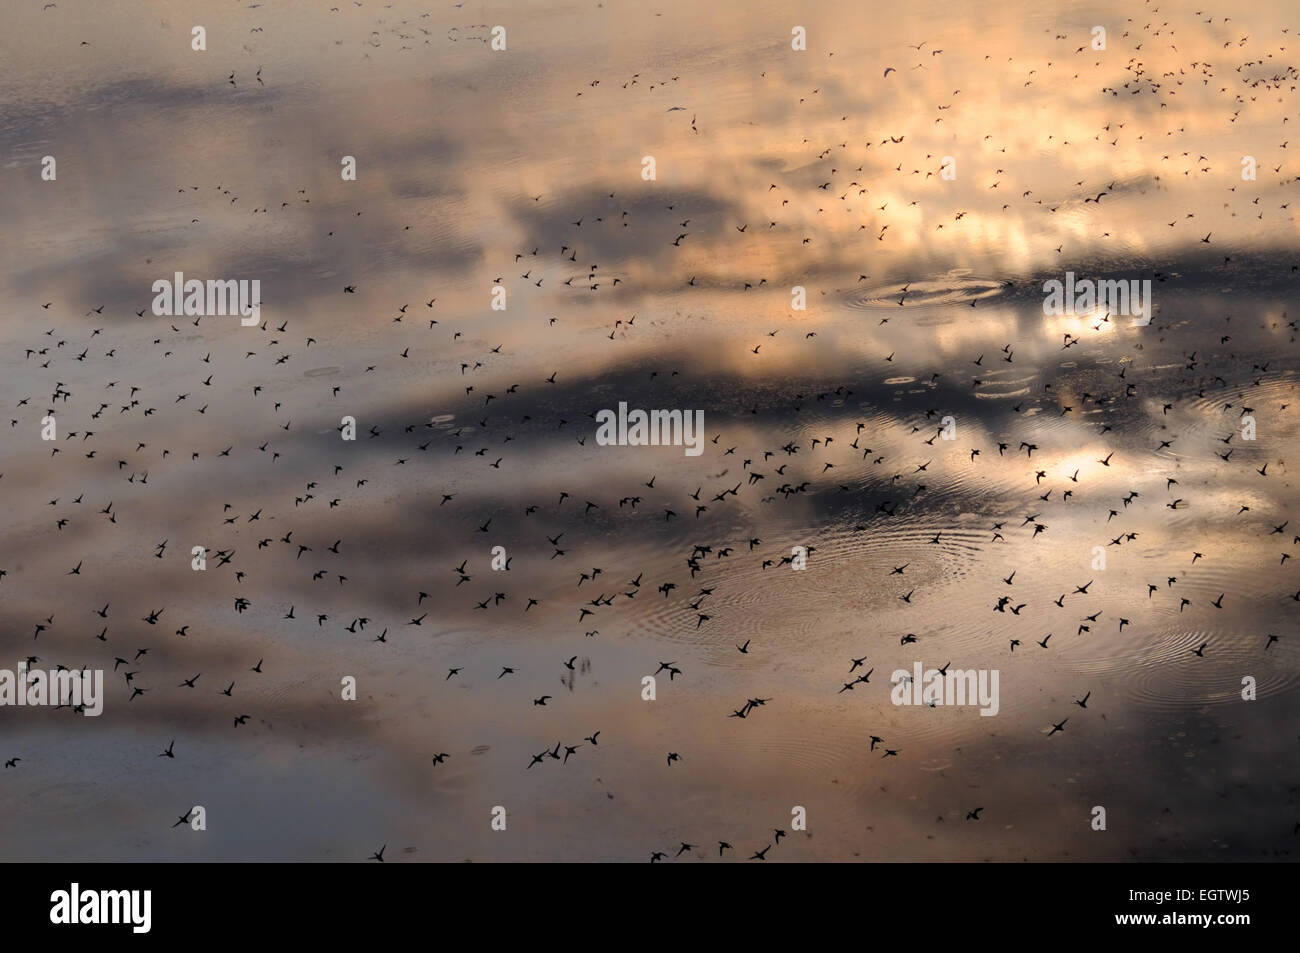 La reflexión del cielo en Manych lago con una bandada de pájaros Foto de stock